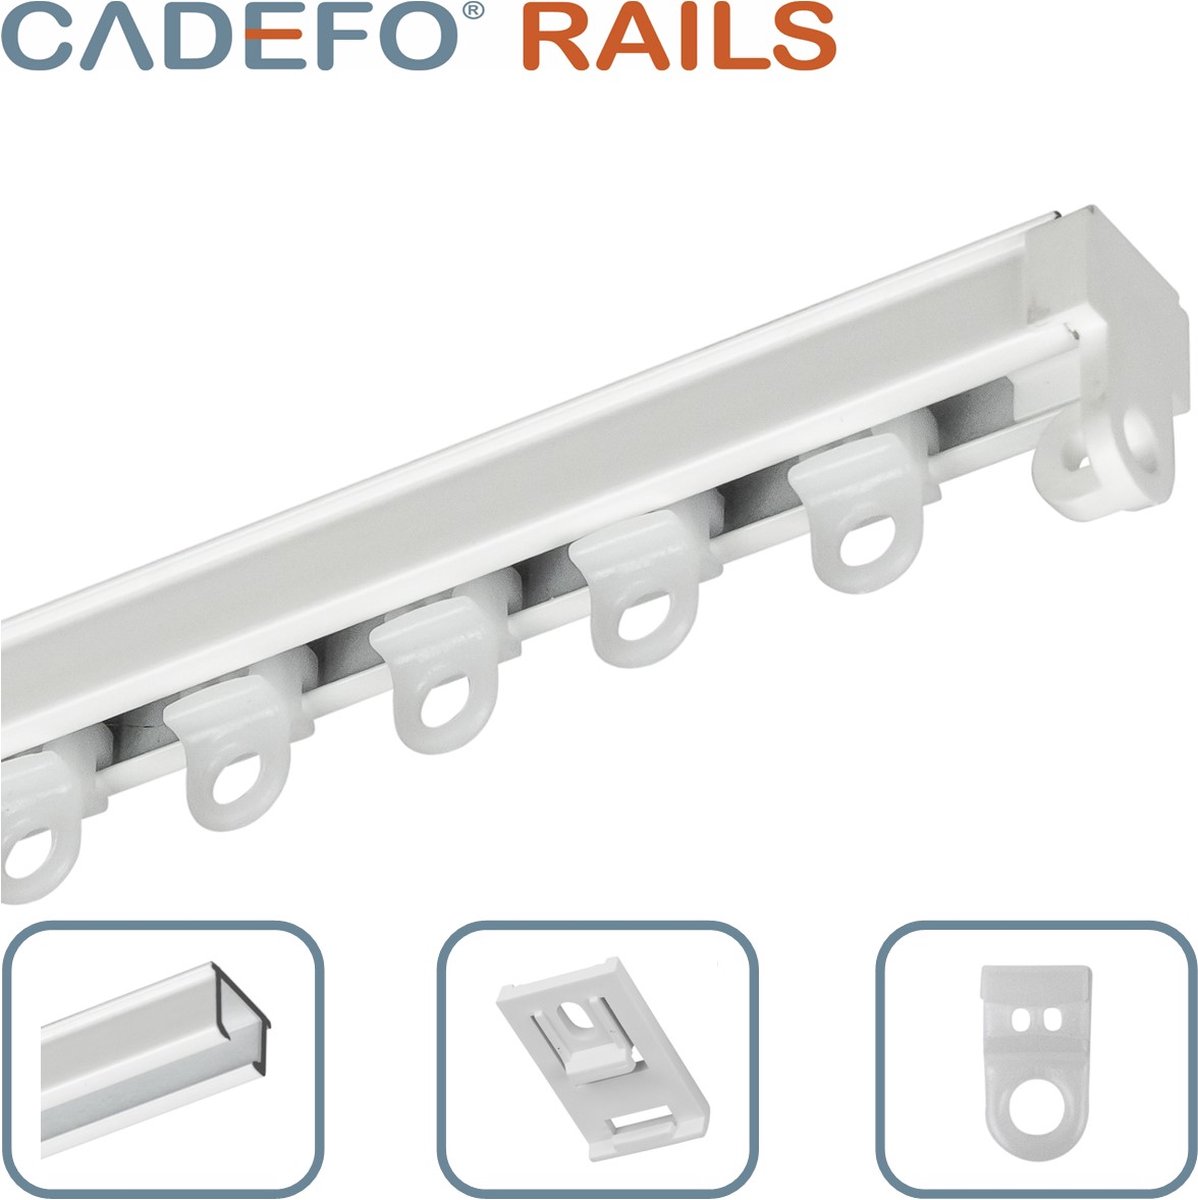 CADEFO RAILS (501 - 550 cm) Gordijnrails - Compleet op maat! - UIT 1 STUK - Leverbaar tot 6 meter - Plafondbevestiging - Lengte 545 cm